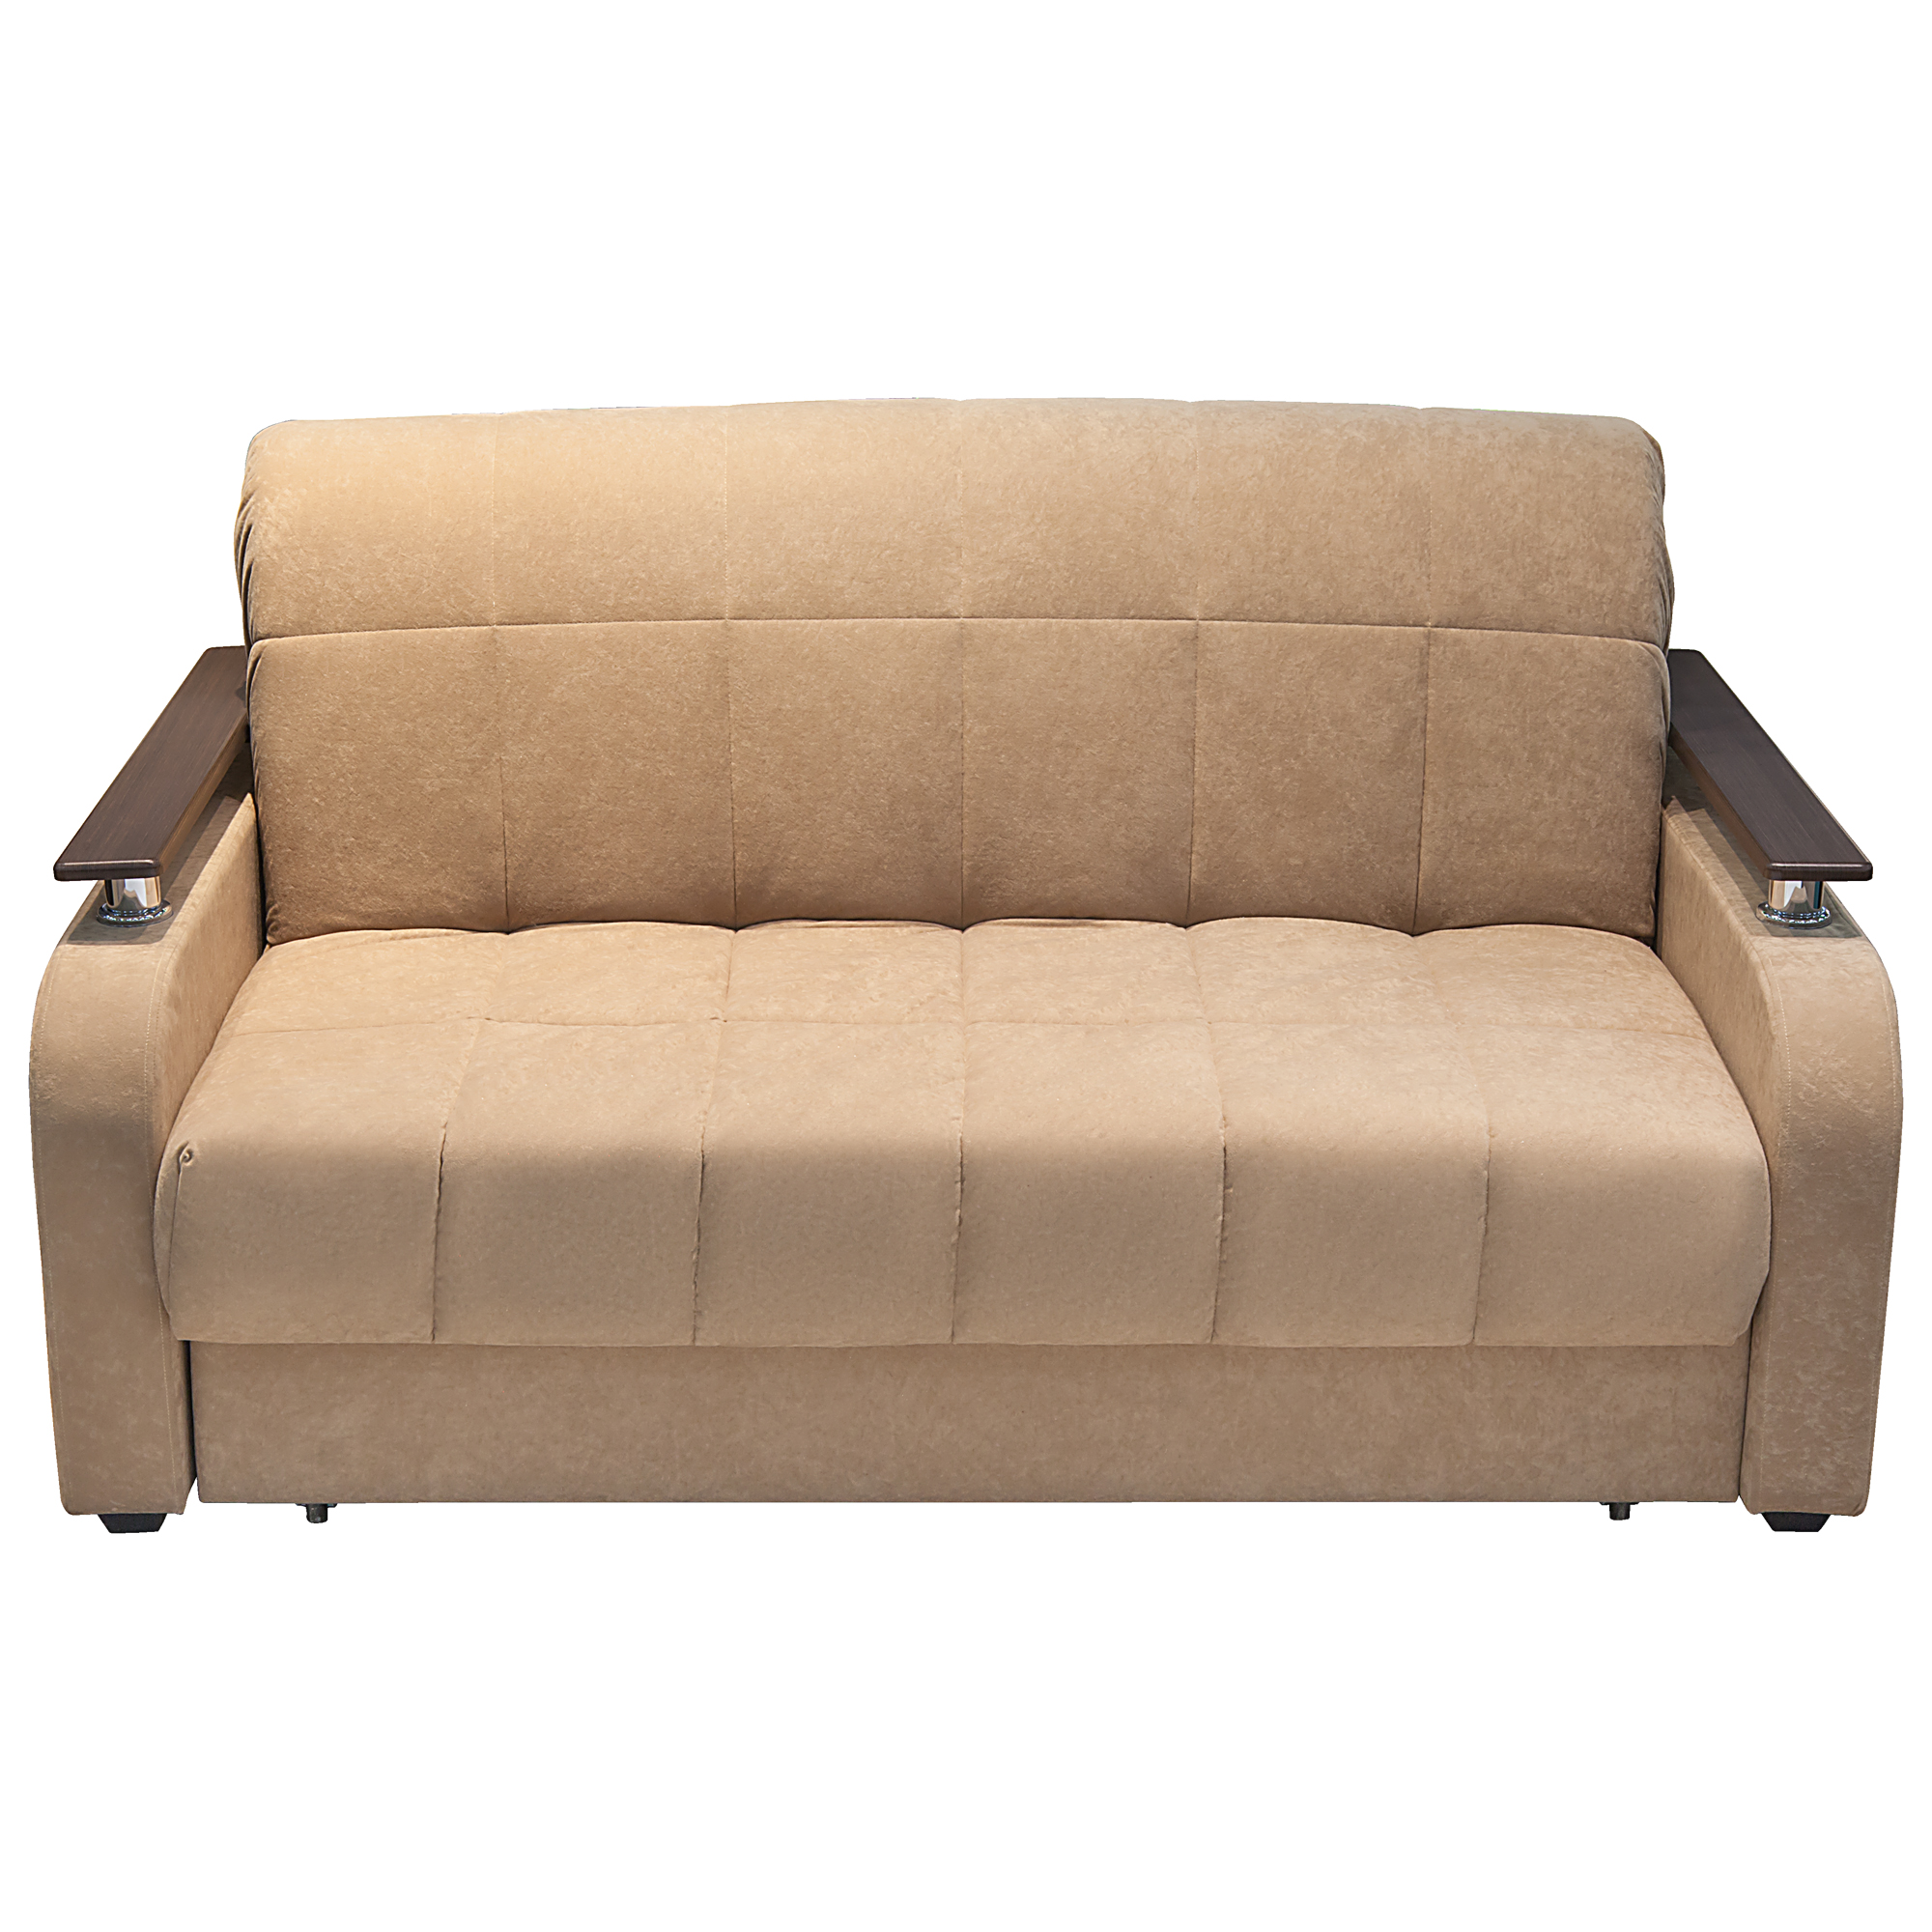 Диван-кровать Смк-мебель Неаполь 140, цвет коричневый, размер 167х101х93 см - фото 2